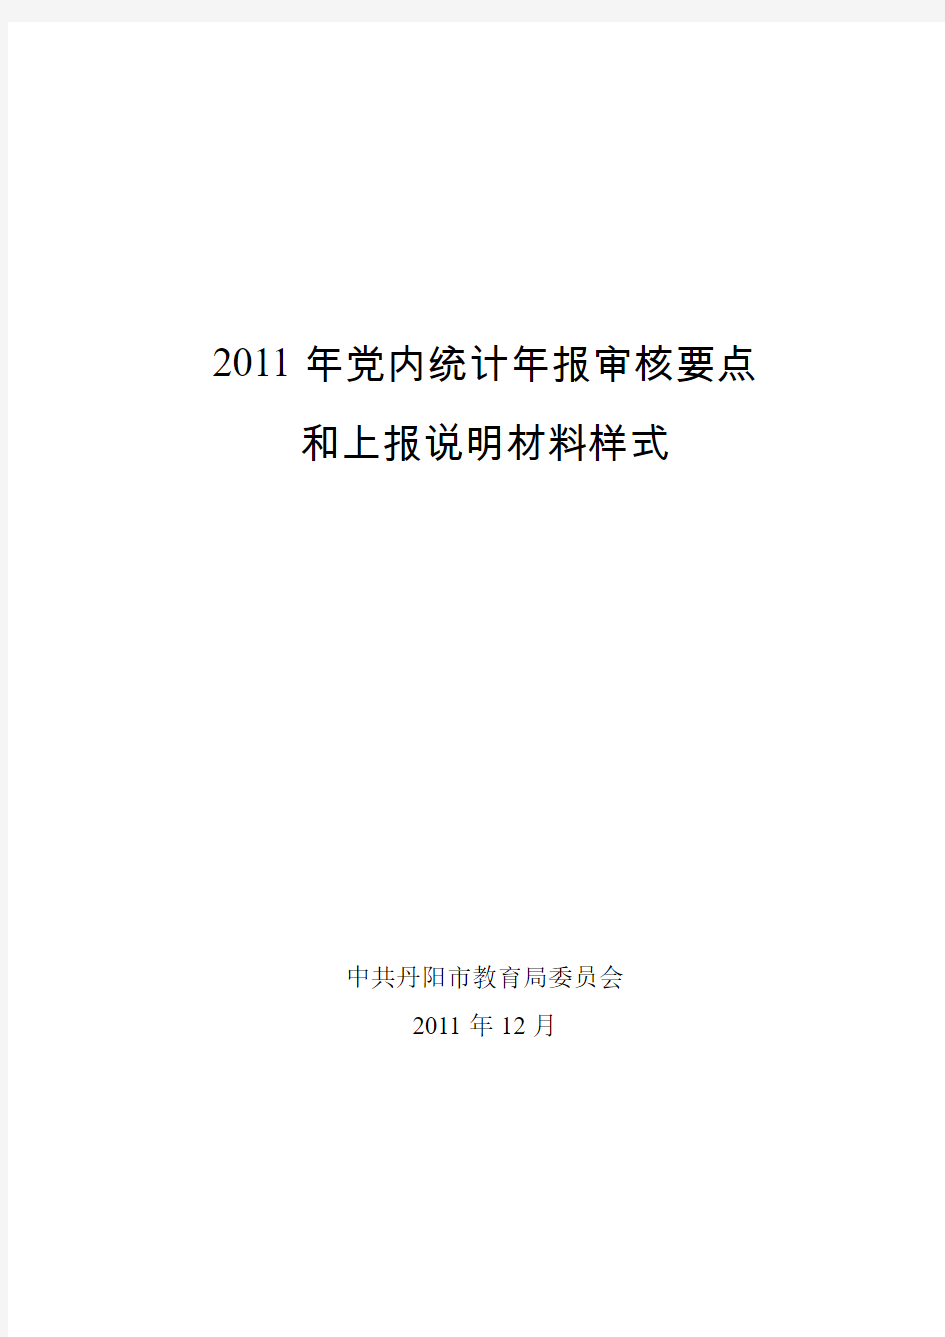 2011年党内统计年报审核要点